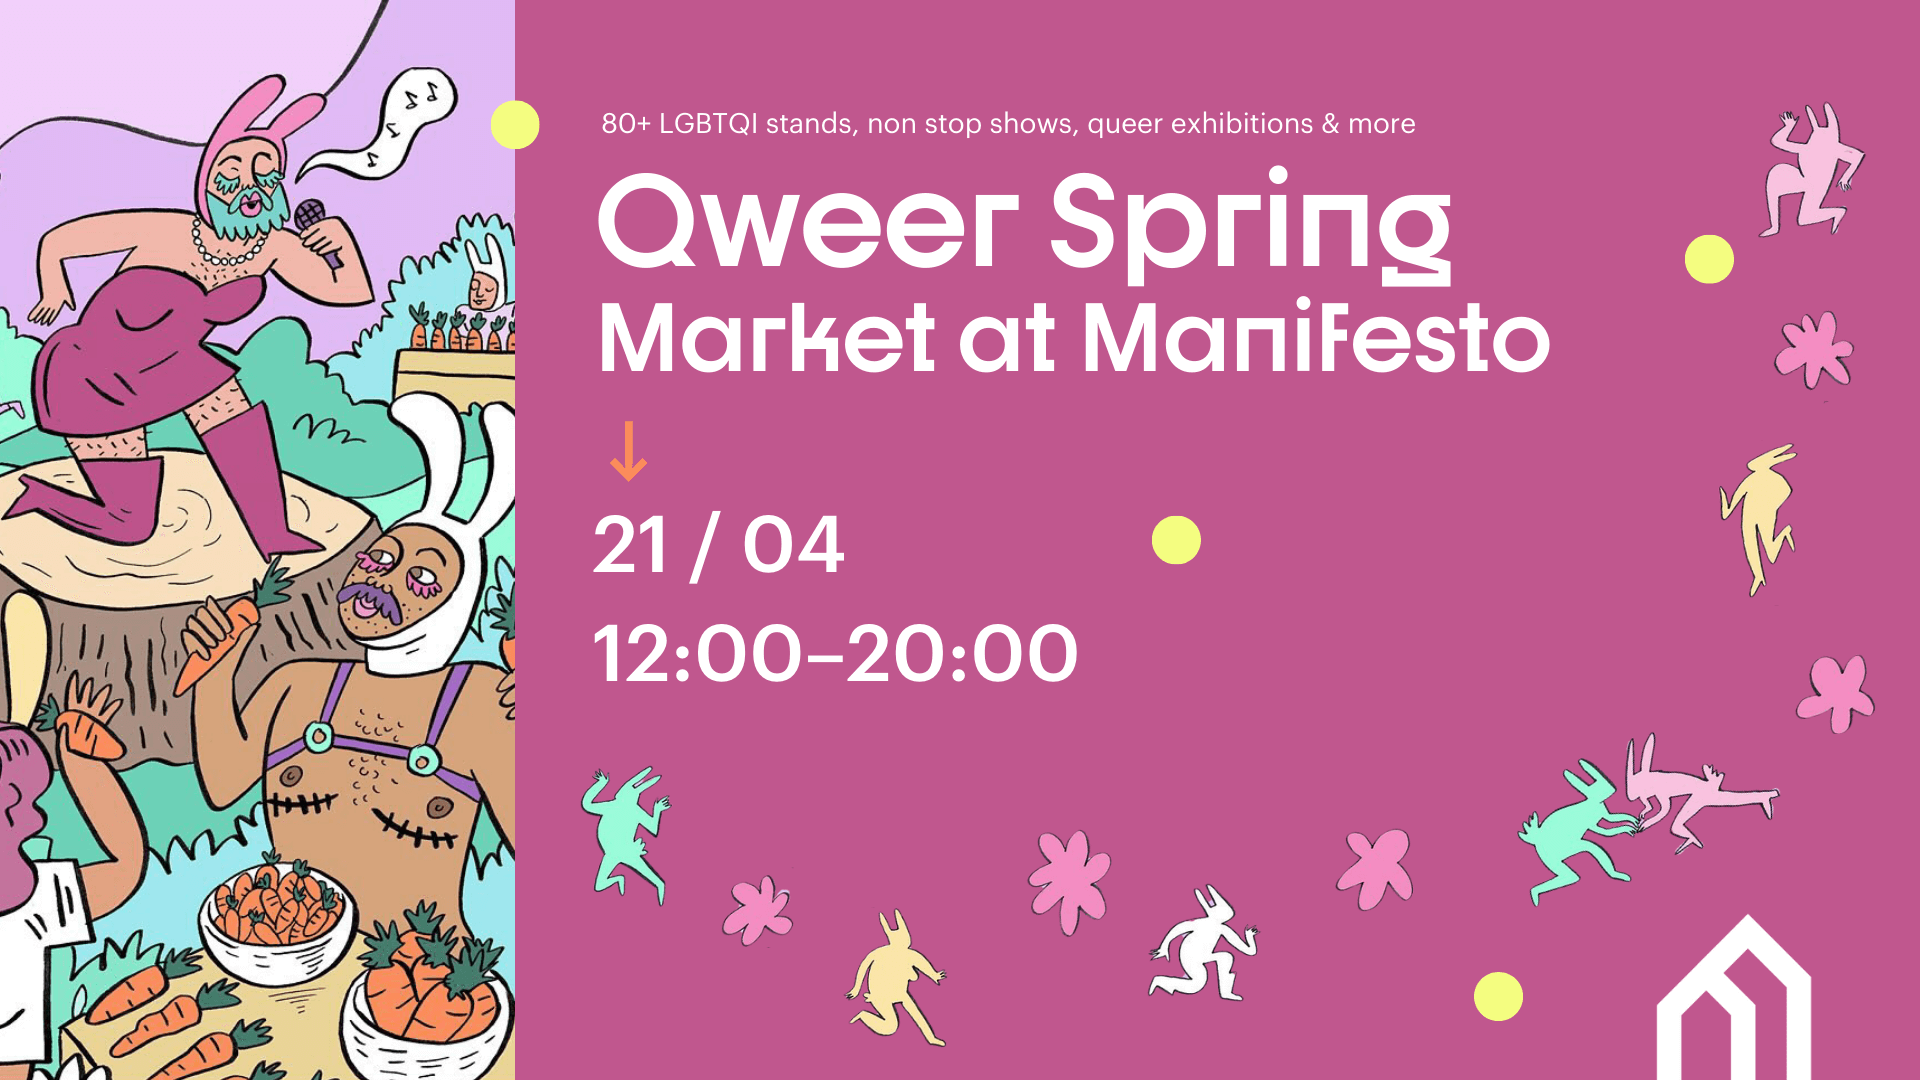 Qweer Spring Market at Manifesto, 21/04